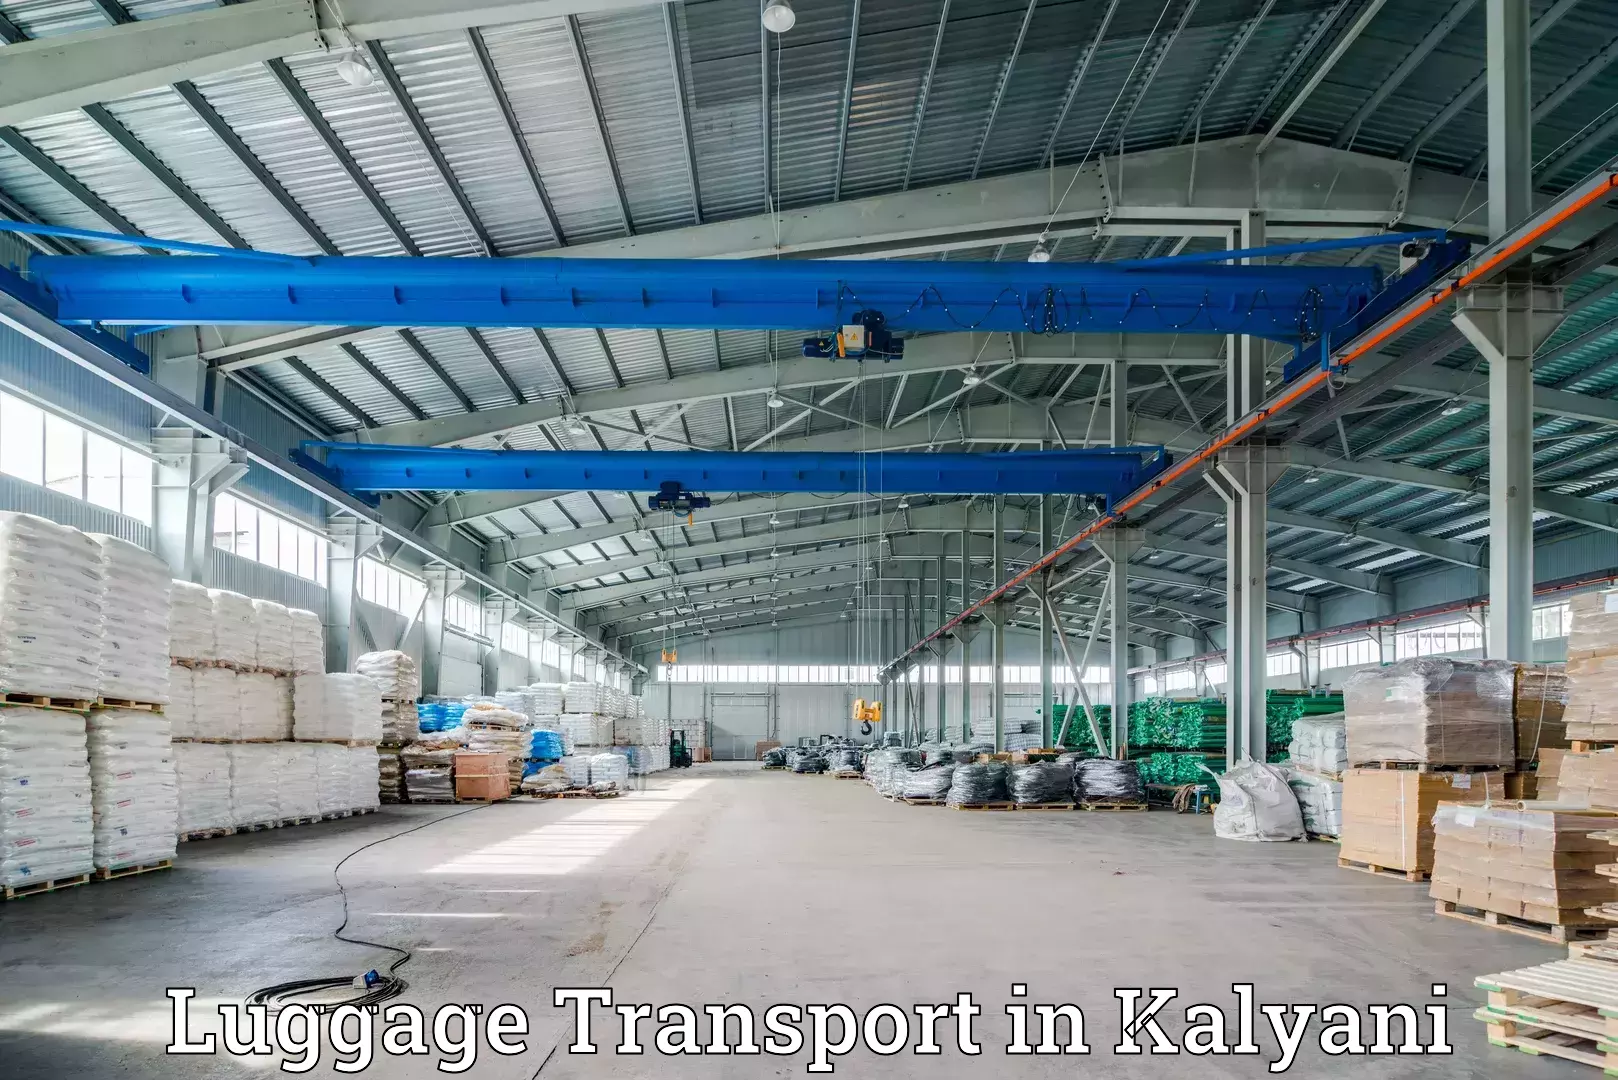 Multi-destination luggage transport in Kalyani